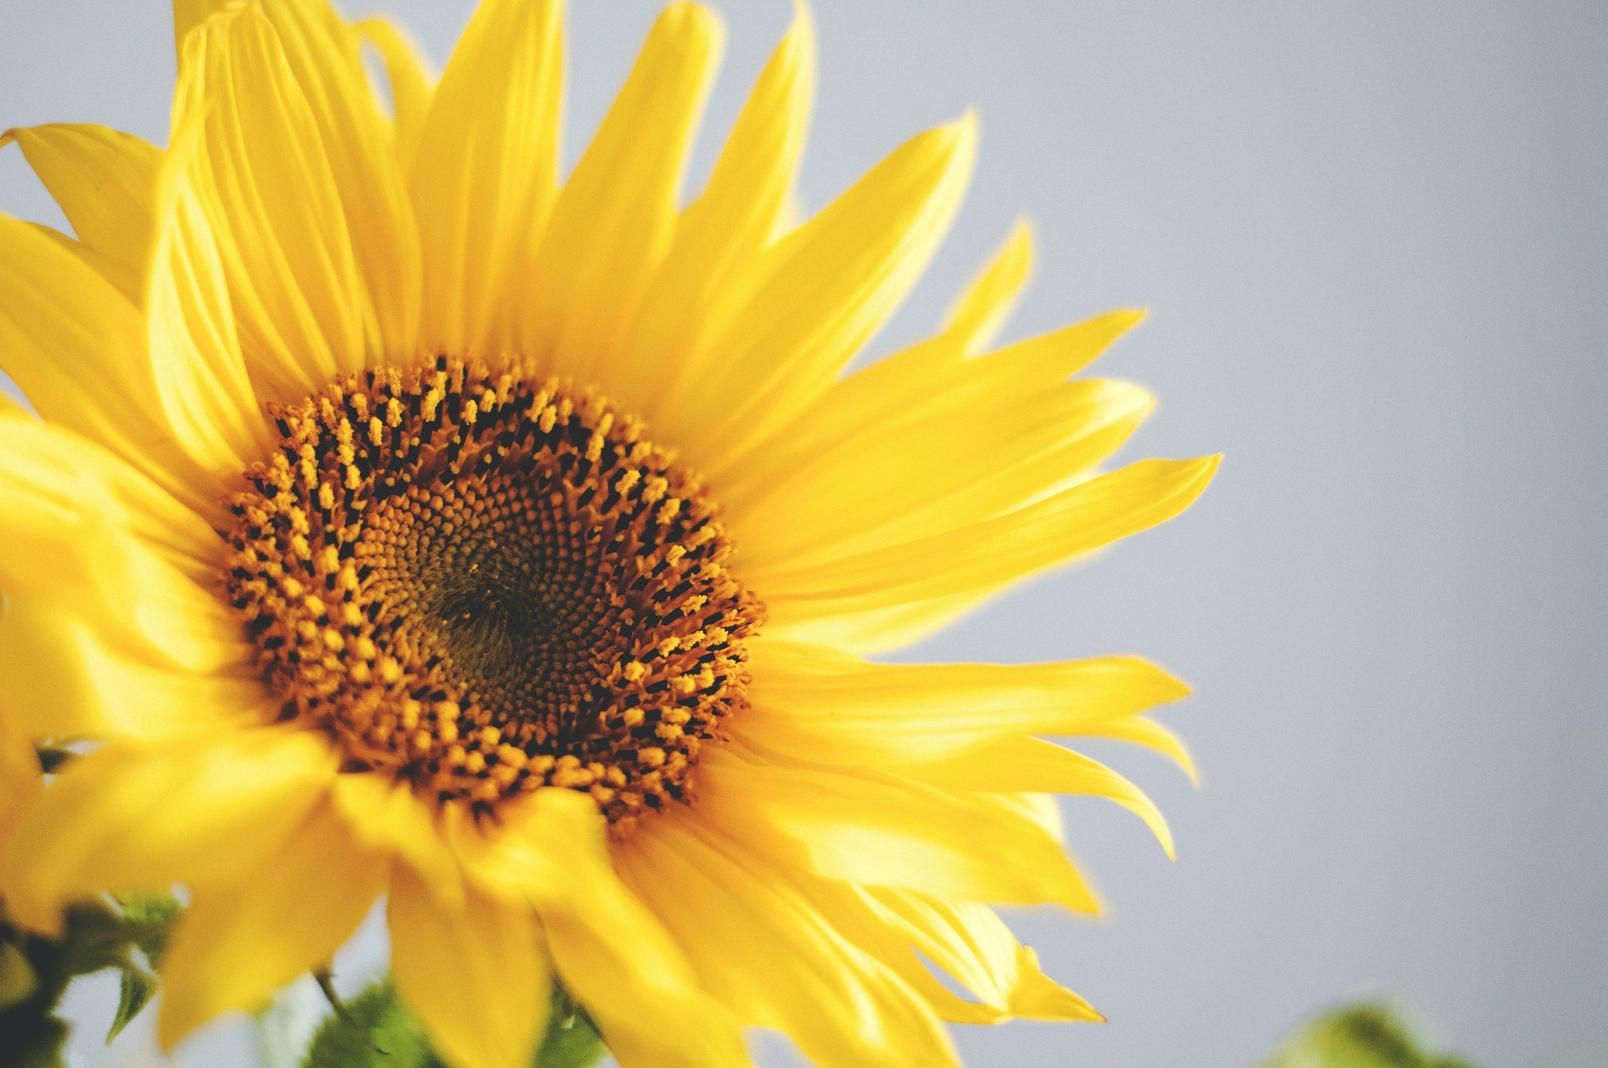 paccino-sunflowers